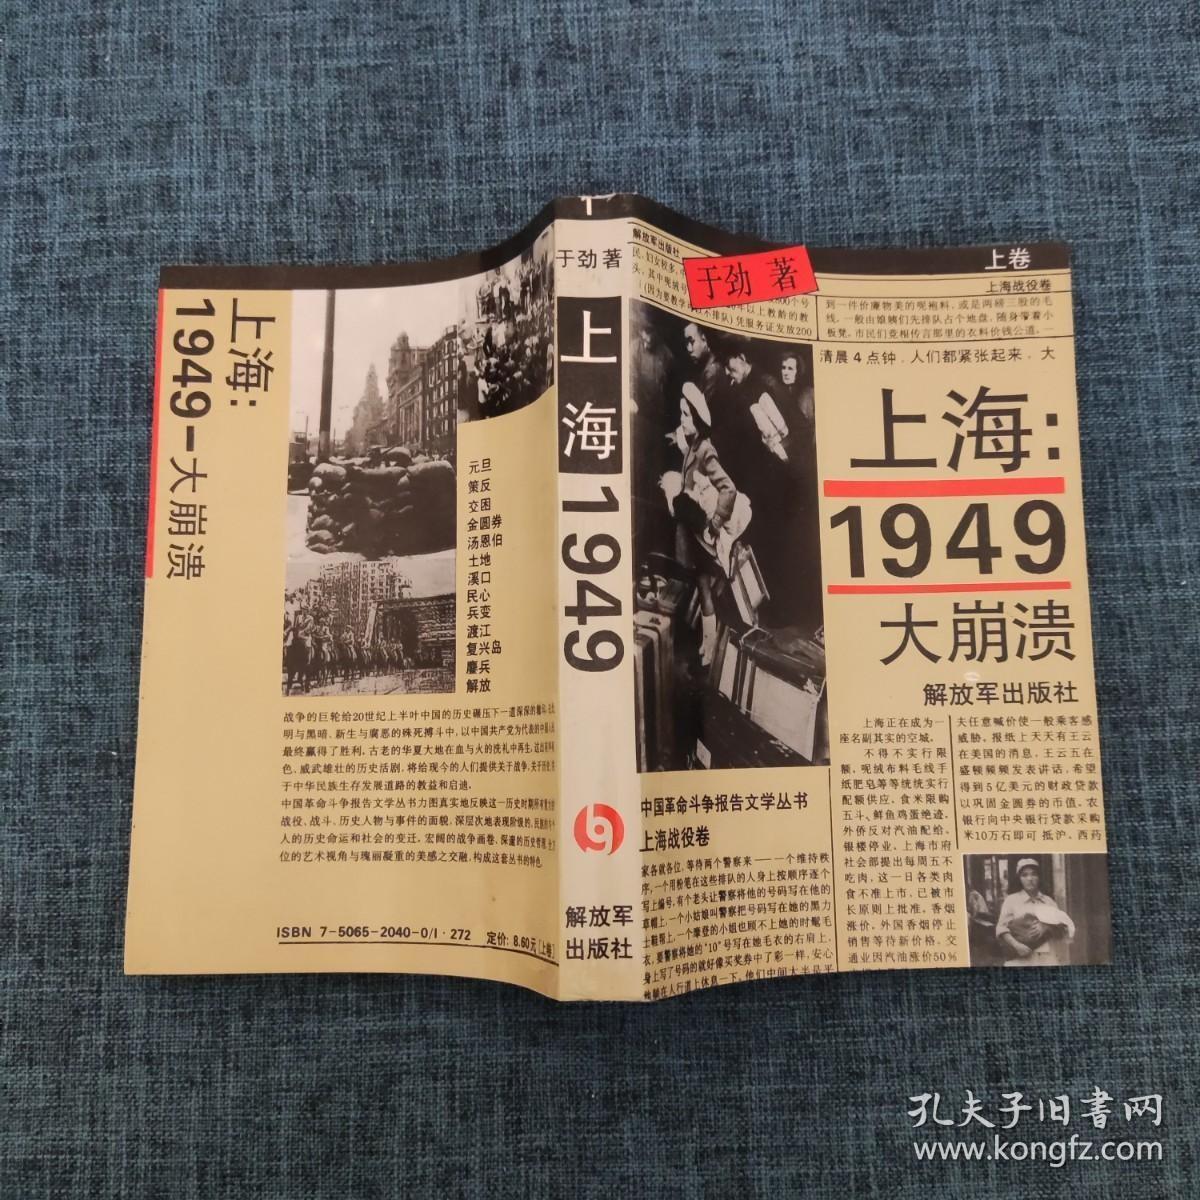 上海1949大崩溃 上卷